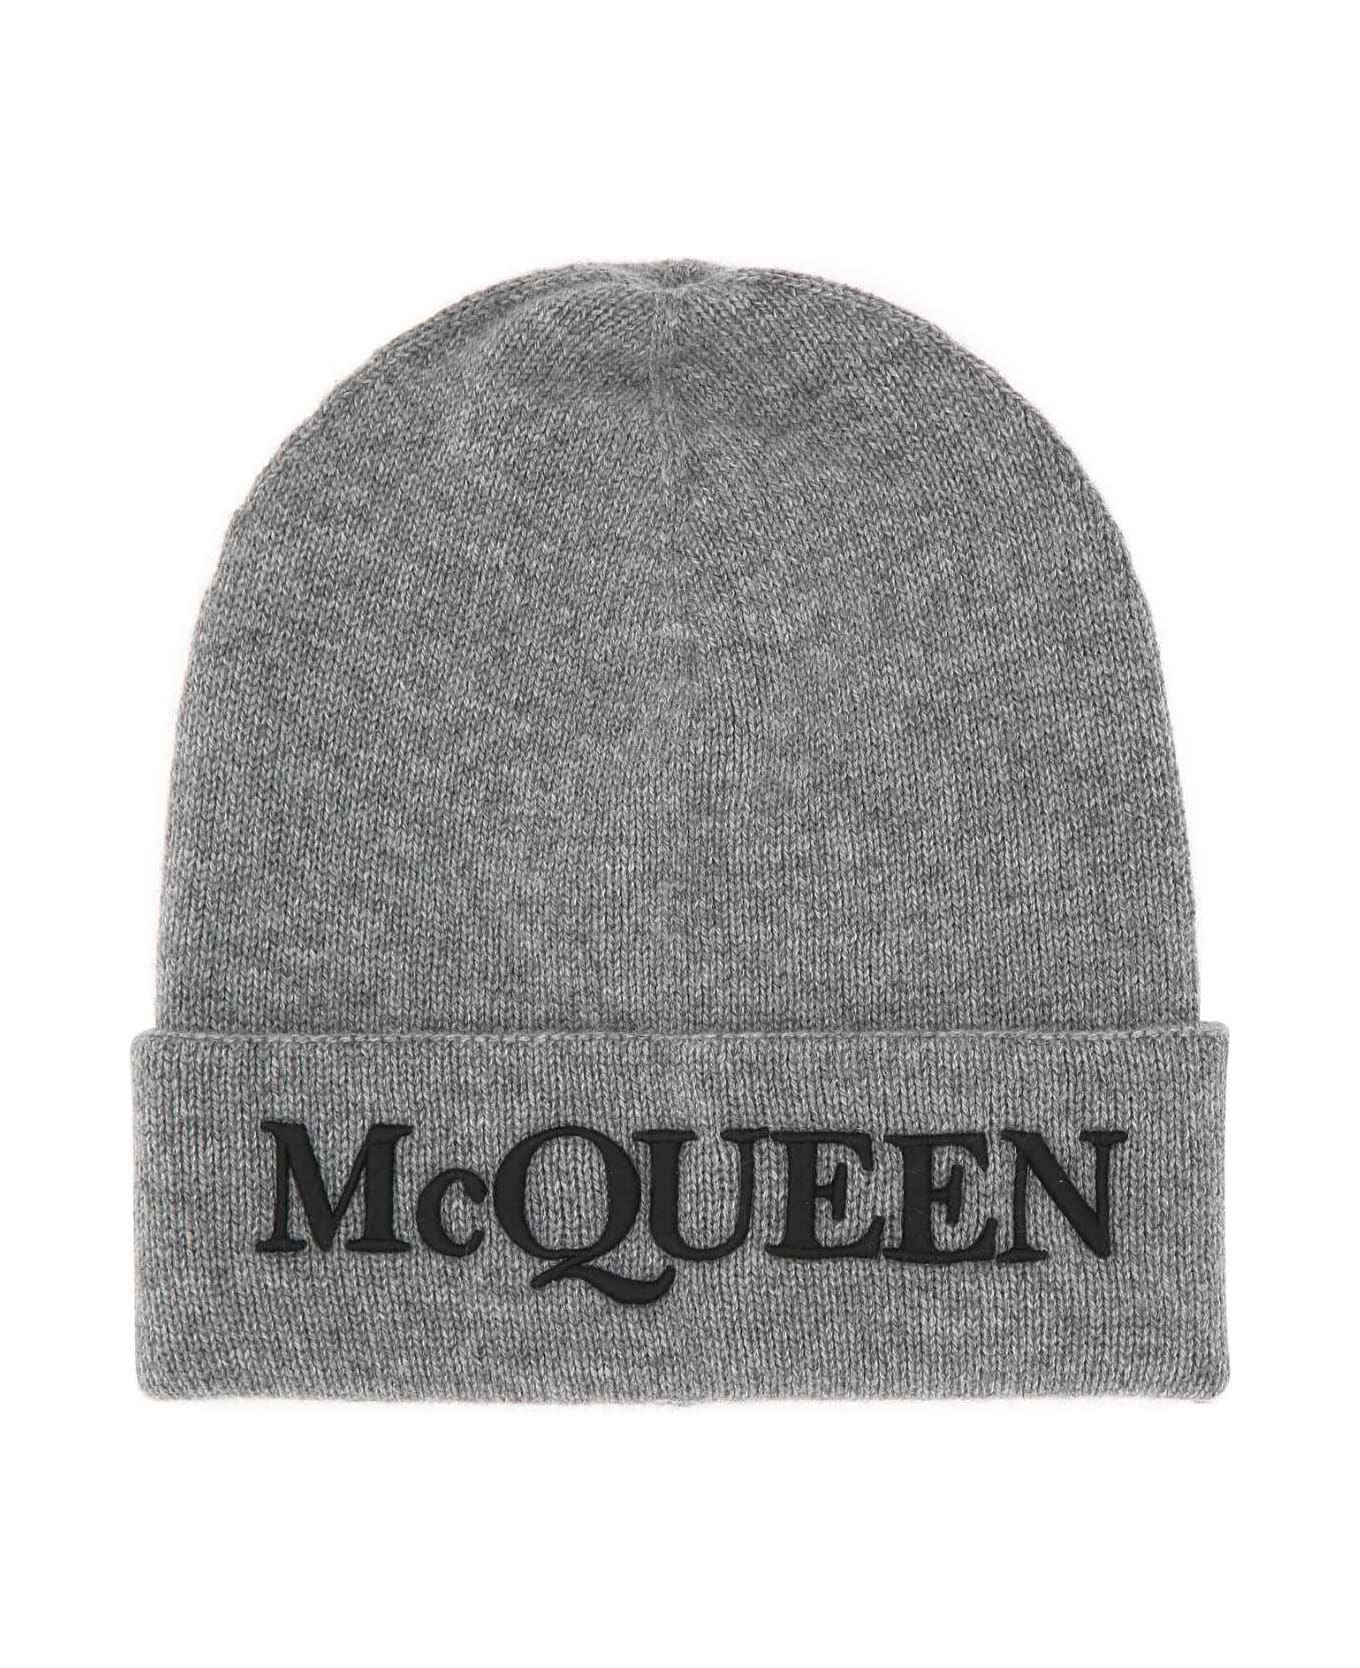 Alexander McQueen Grey Cashmere Beanie Hat - 1460